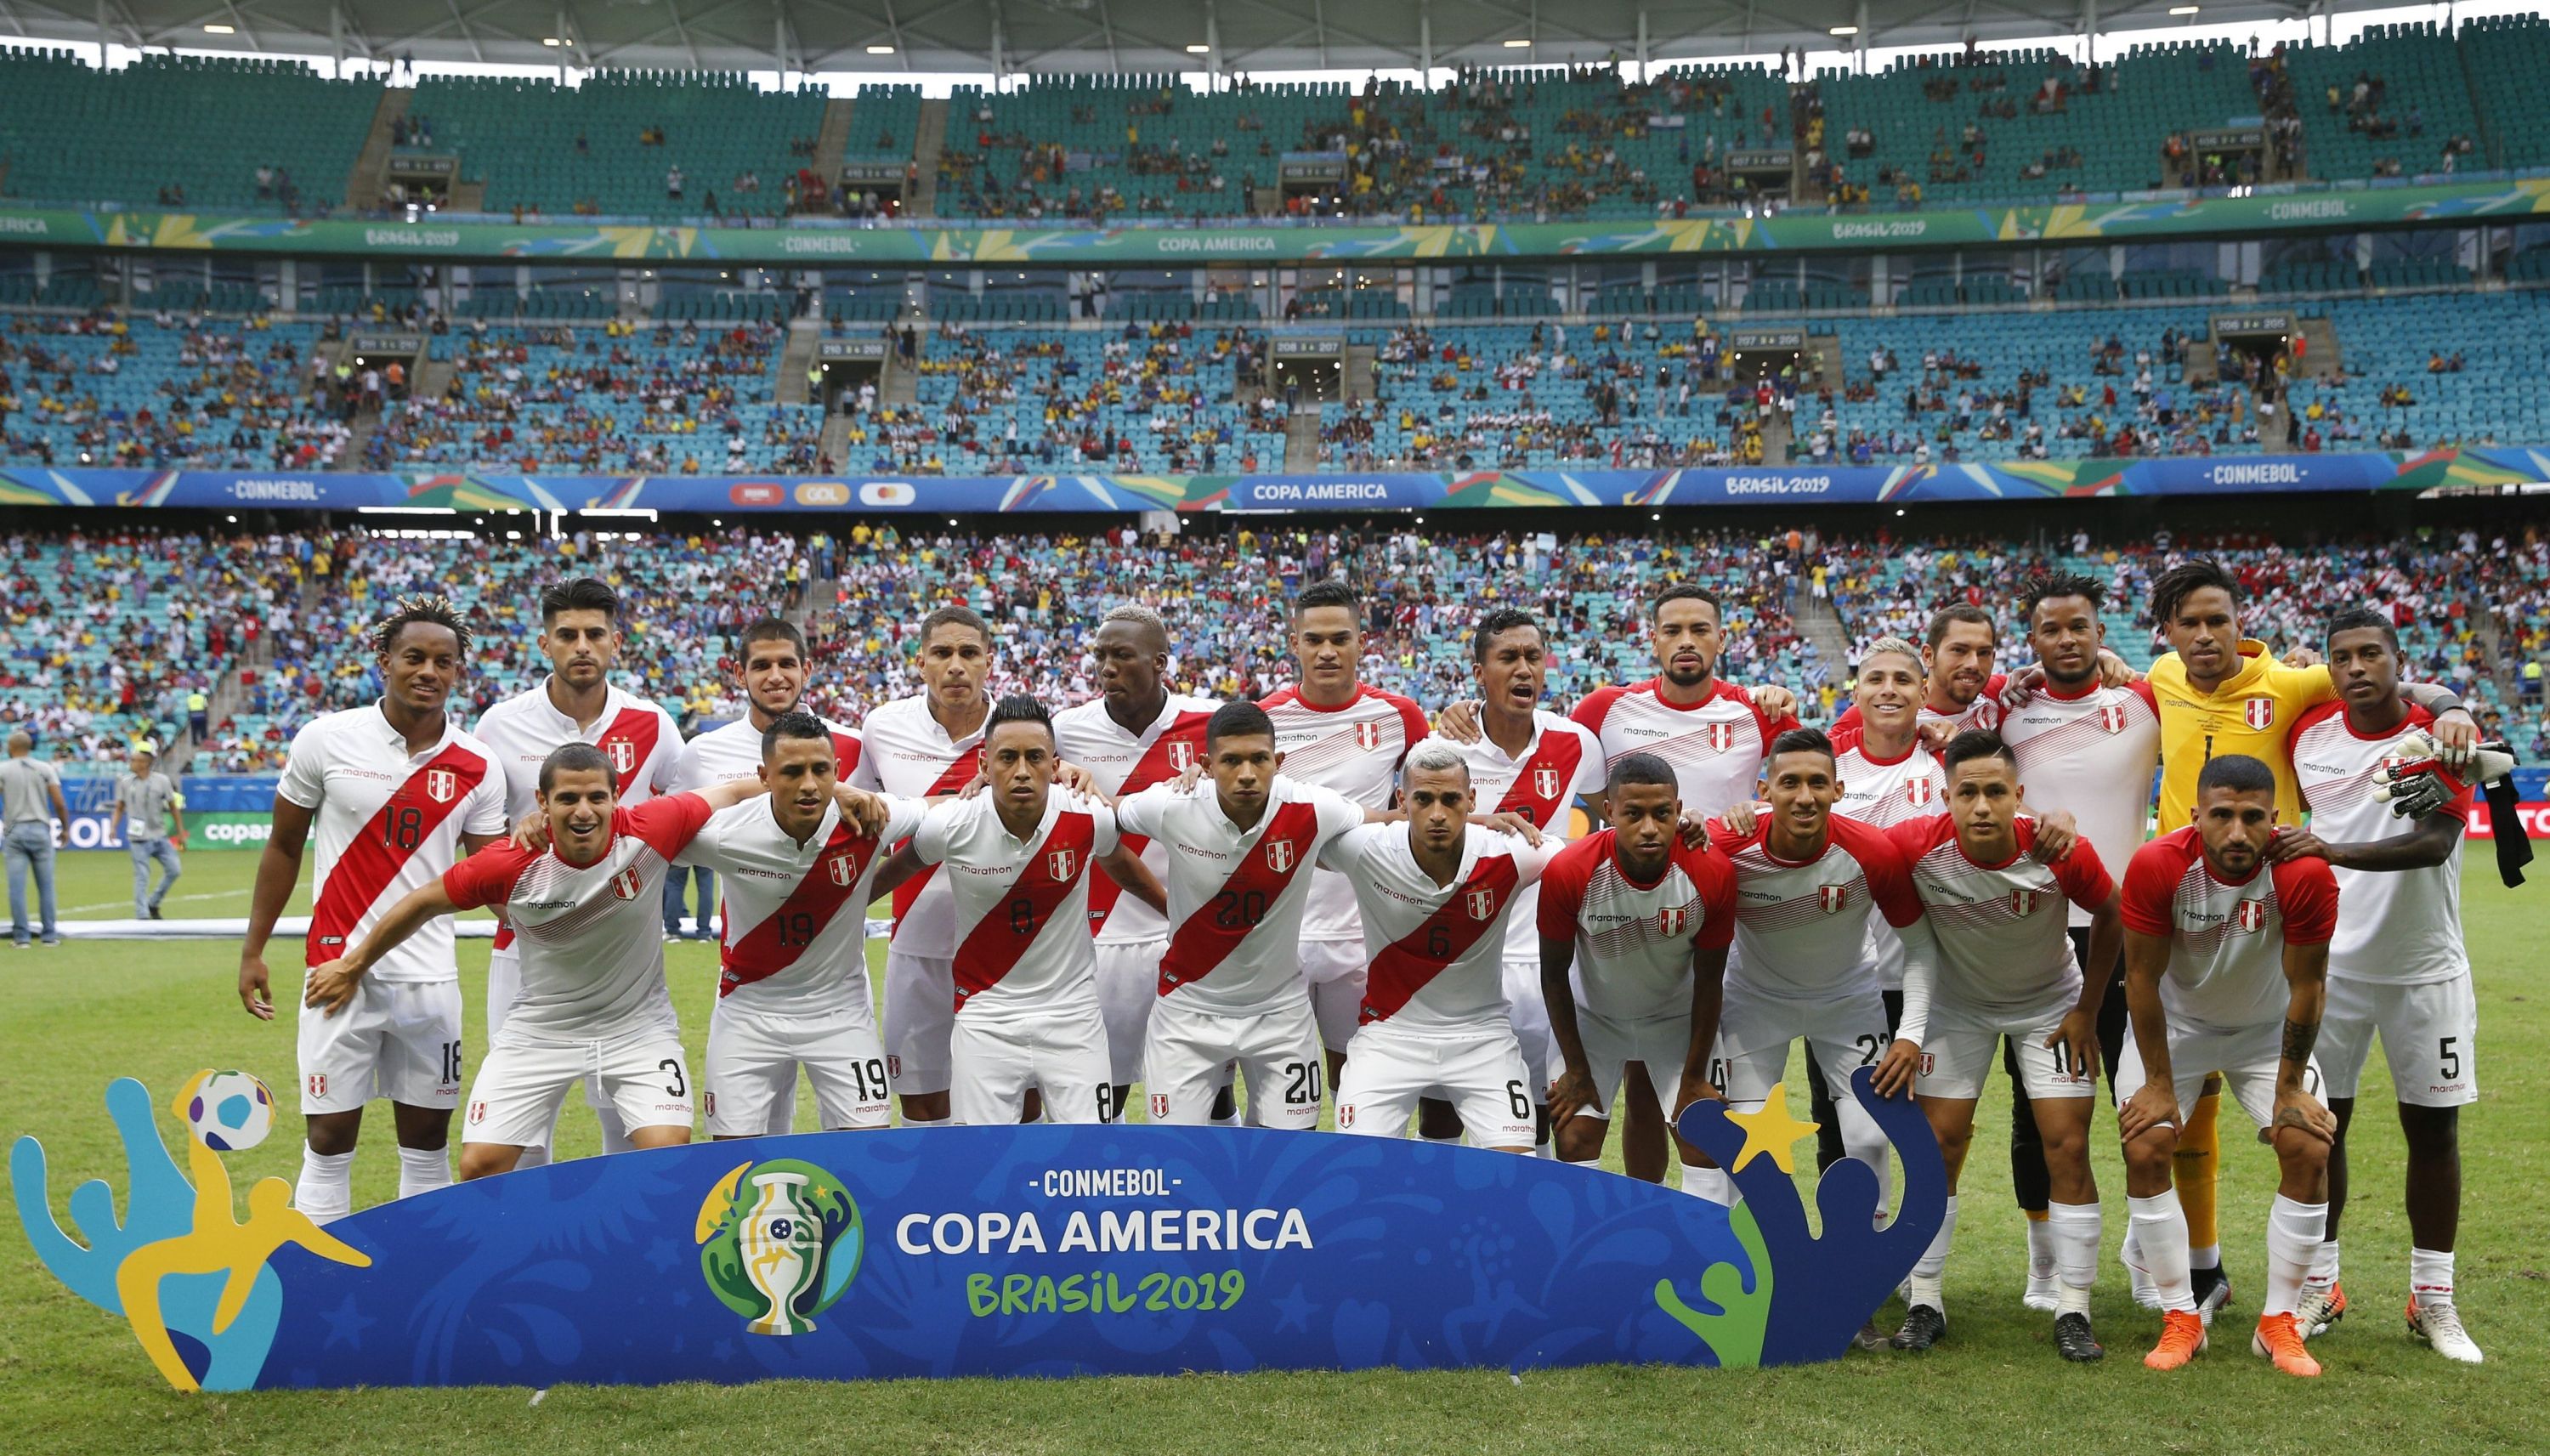 Perú vs. Uruguay EN VIVO: Paolo Guerrero llamó a todo el plantel para la foto oficial en el Arena Fonte Nova. (Foto: AFP)